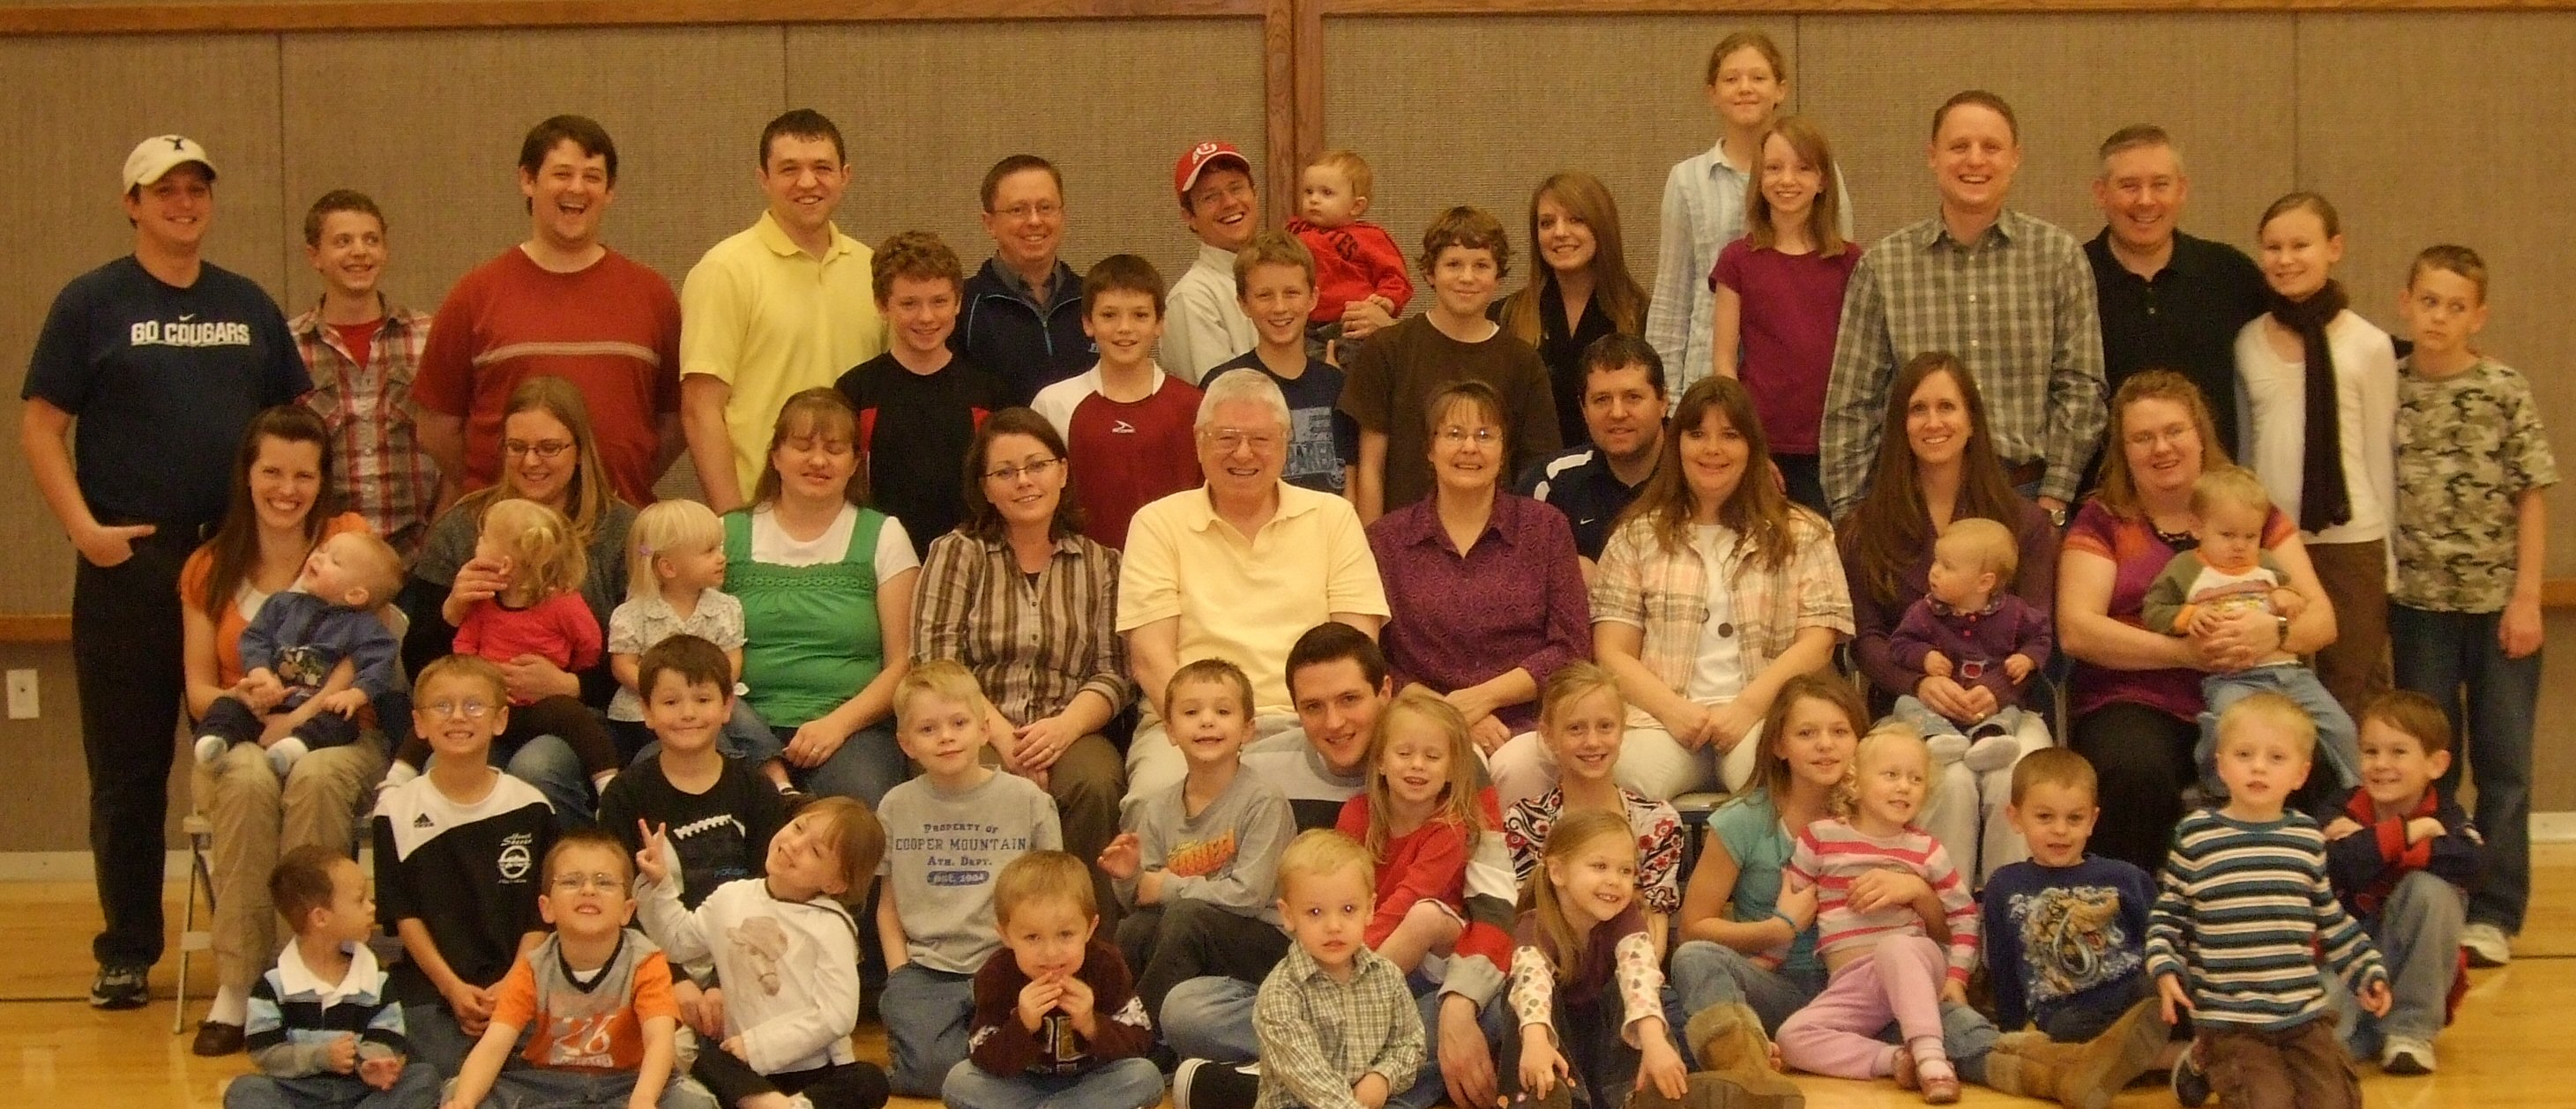 Our family (Nov. 26, 2009).